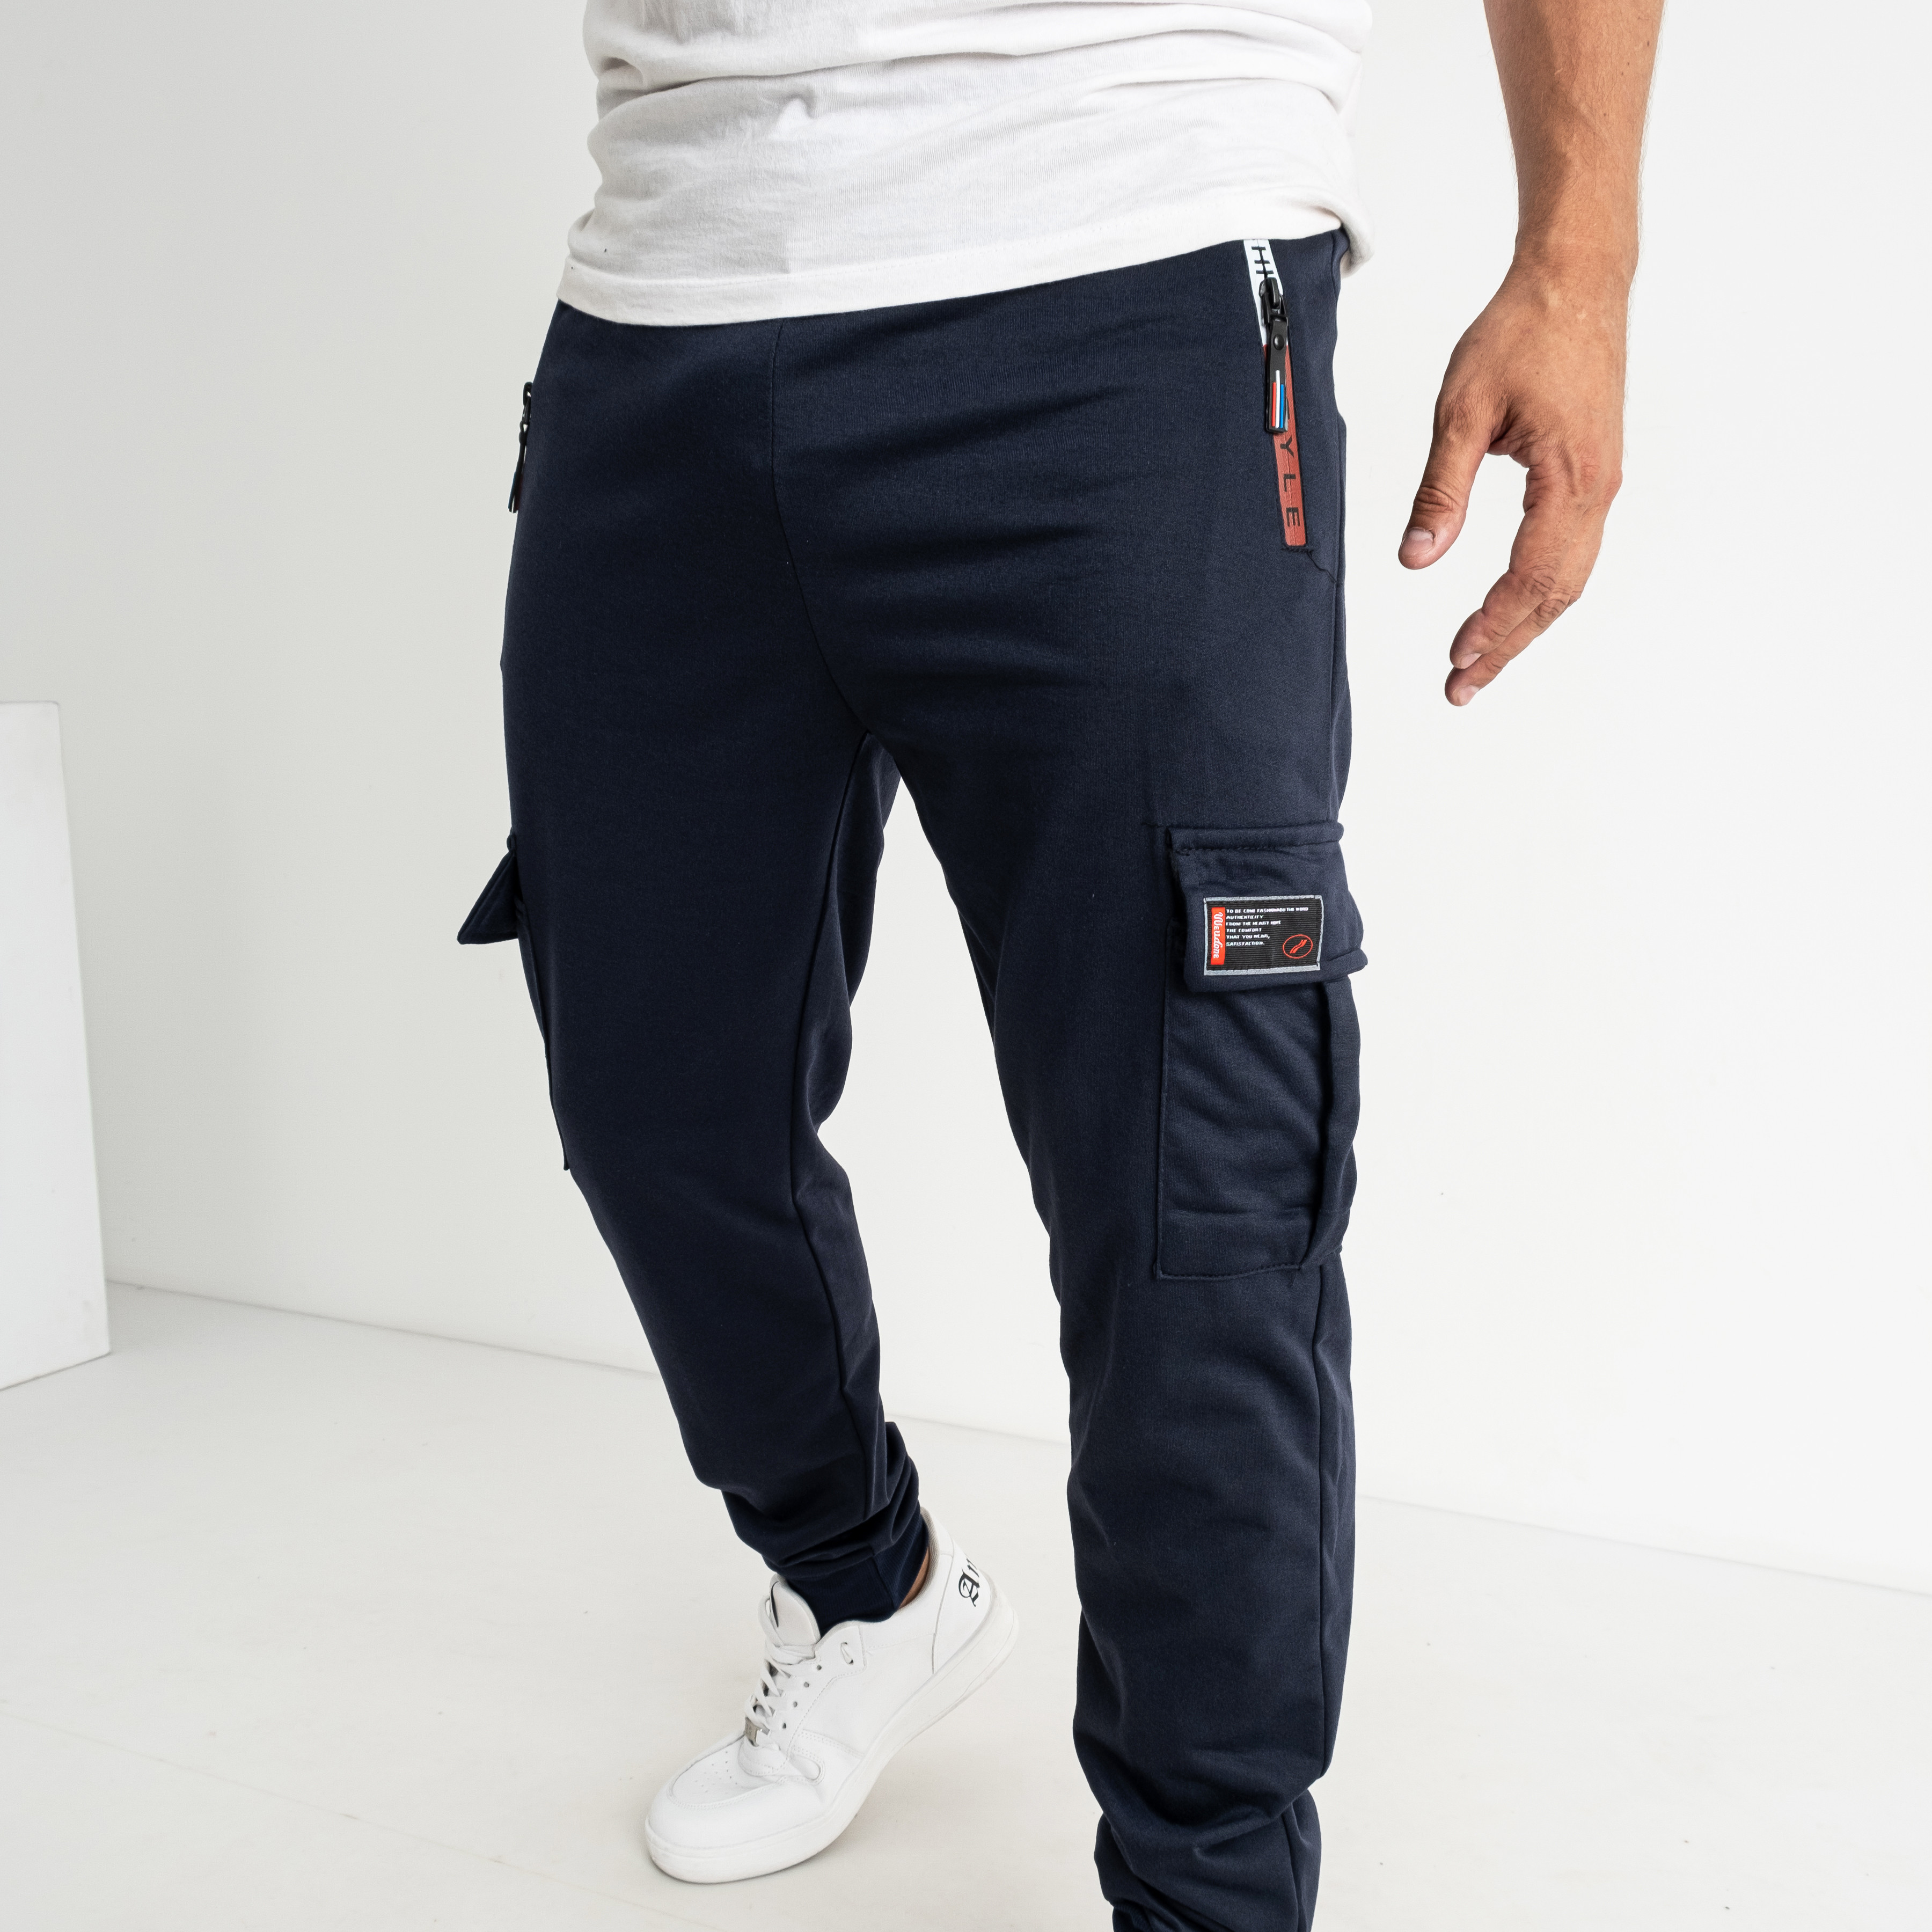 0108-2 СИНИЕ спортивные штаны мужские стрейчевые на манжете (5 ед. размеры на бирках: XL-5XL соответствуют M-3XL) 